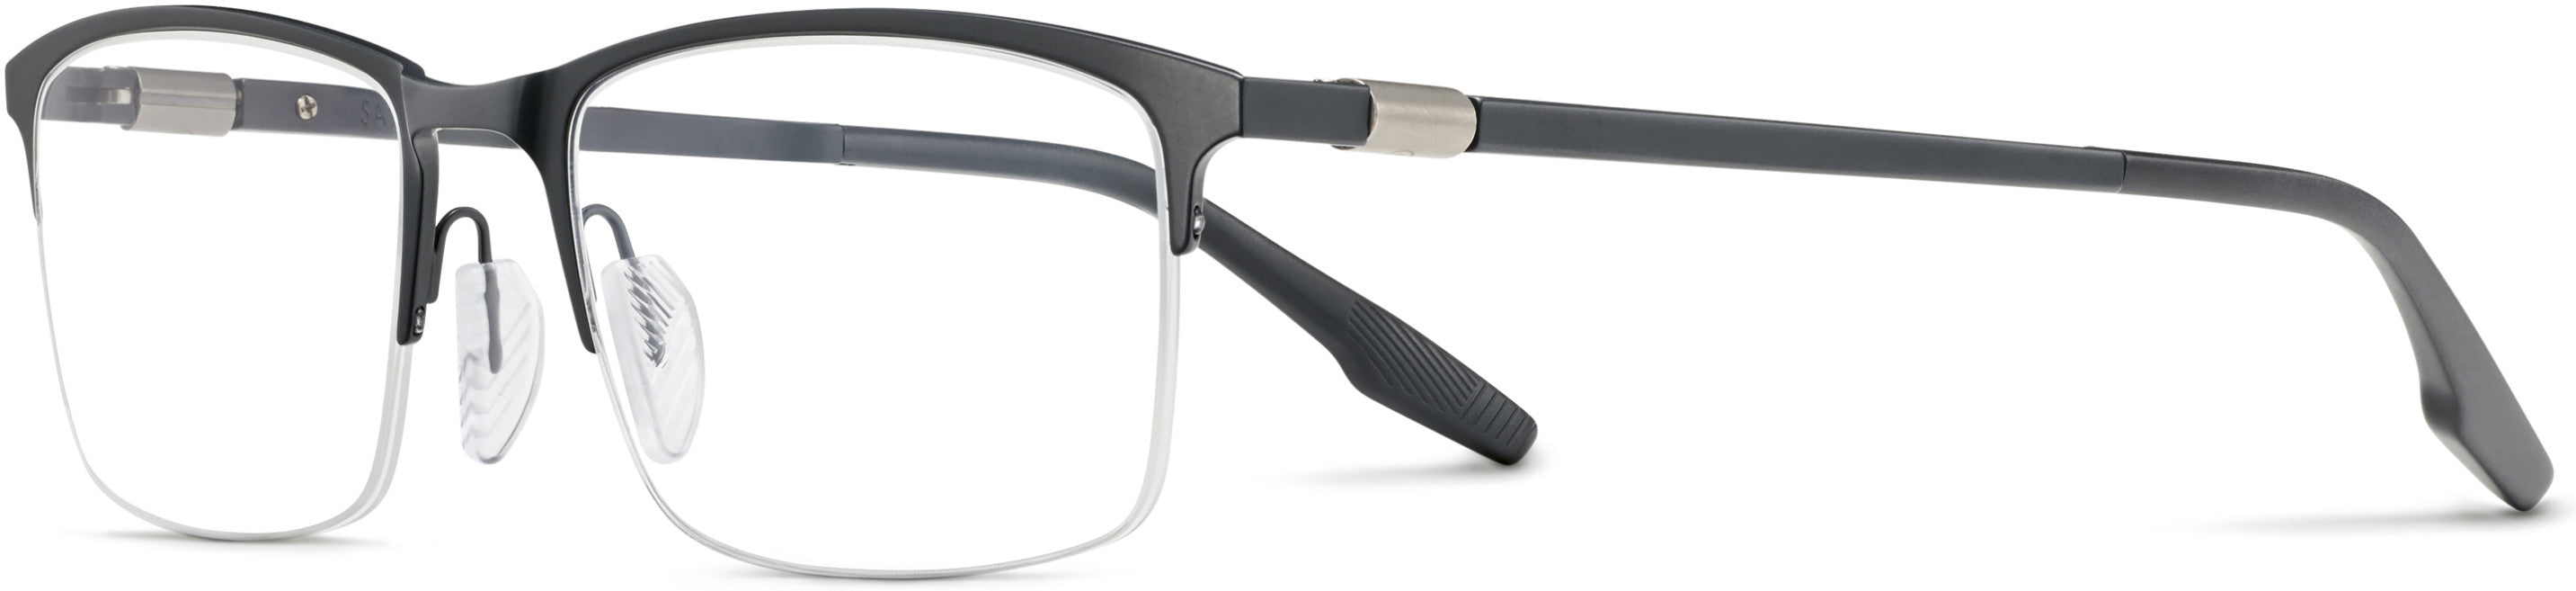 Safilo 2.0 Filo 01 Rectangular Eyeglasses 0FRE-0FRE  Matte Gray (00 Demo Lens)